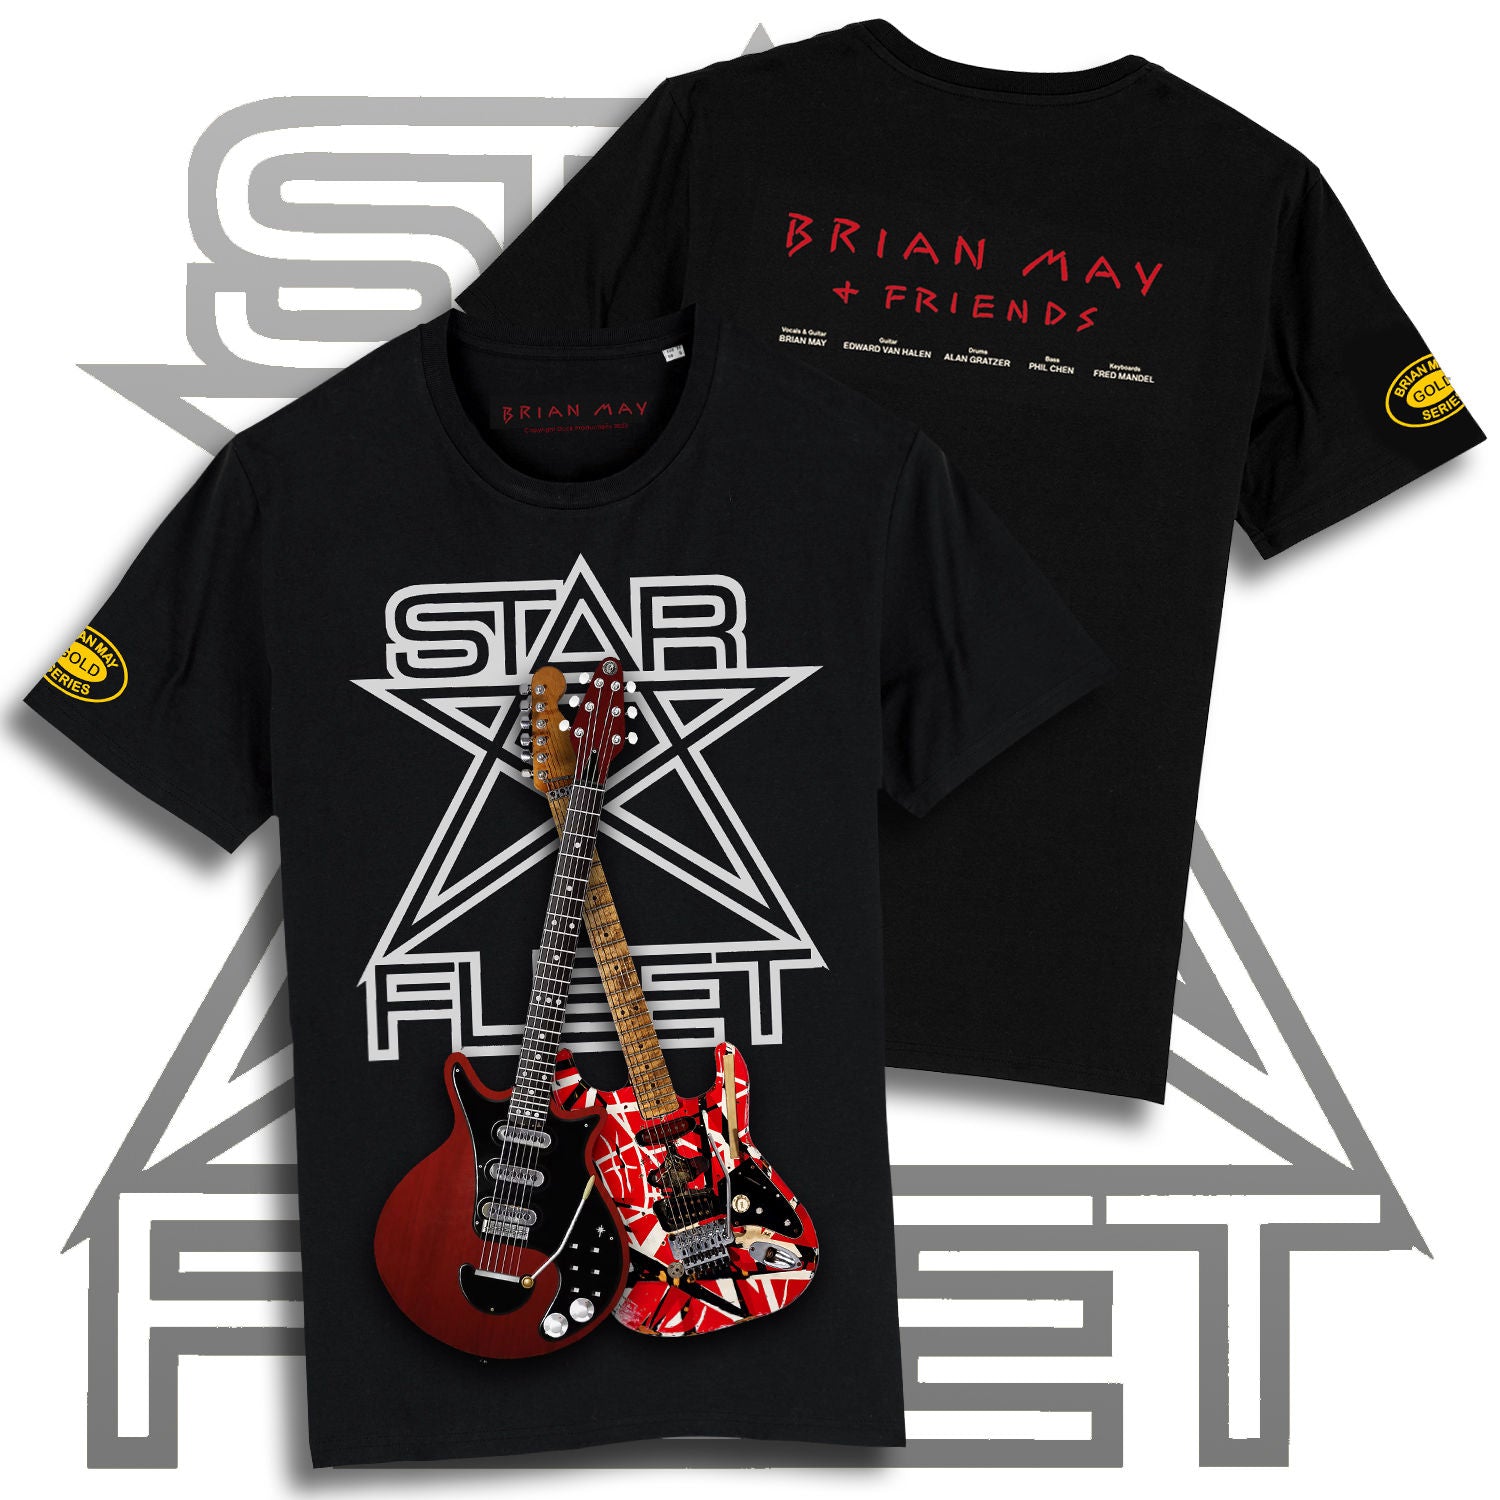 Brian May - Star Fleet Brian May Guitar T-Shirt